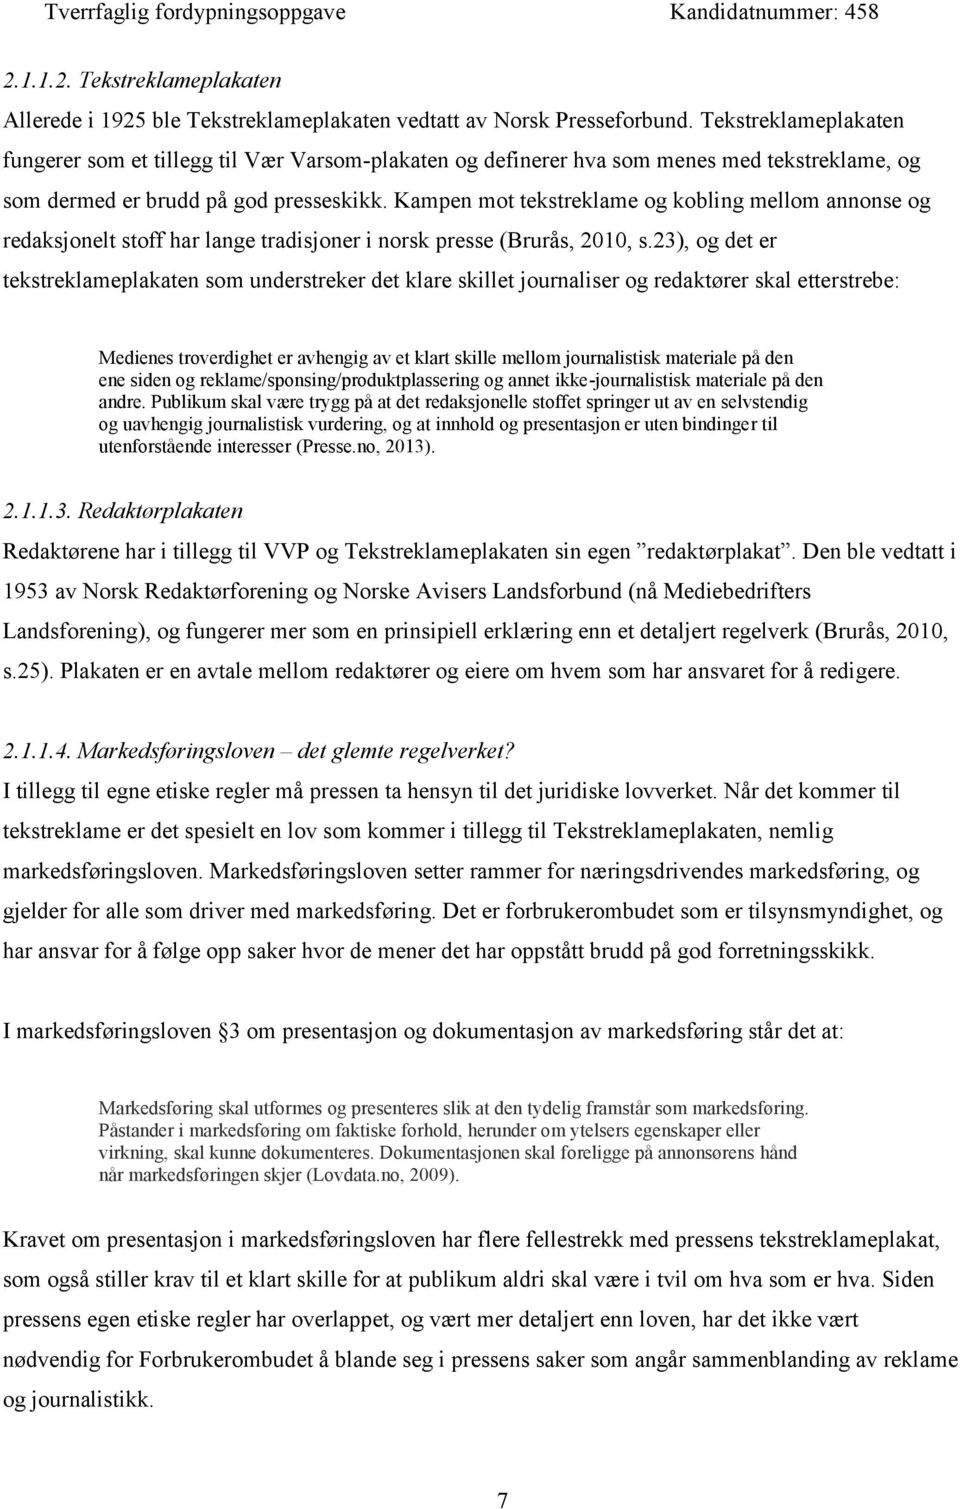 Kampen mot tekstreklame og kobling mellom annonse og redaksjonelt stoff har lange tradisjoner i norsk presse (Brurås, 2010, s.